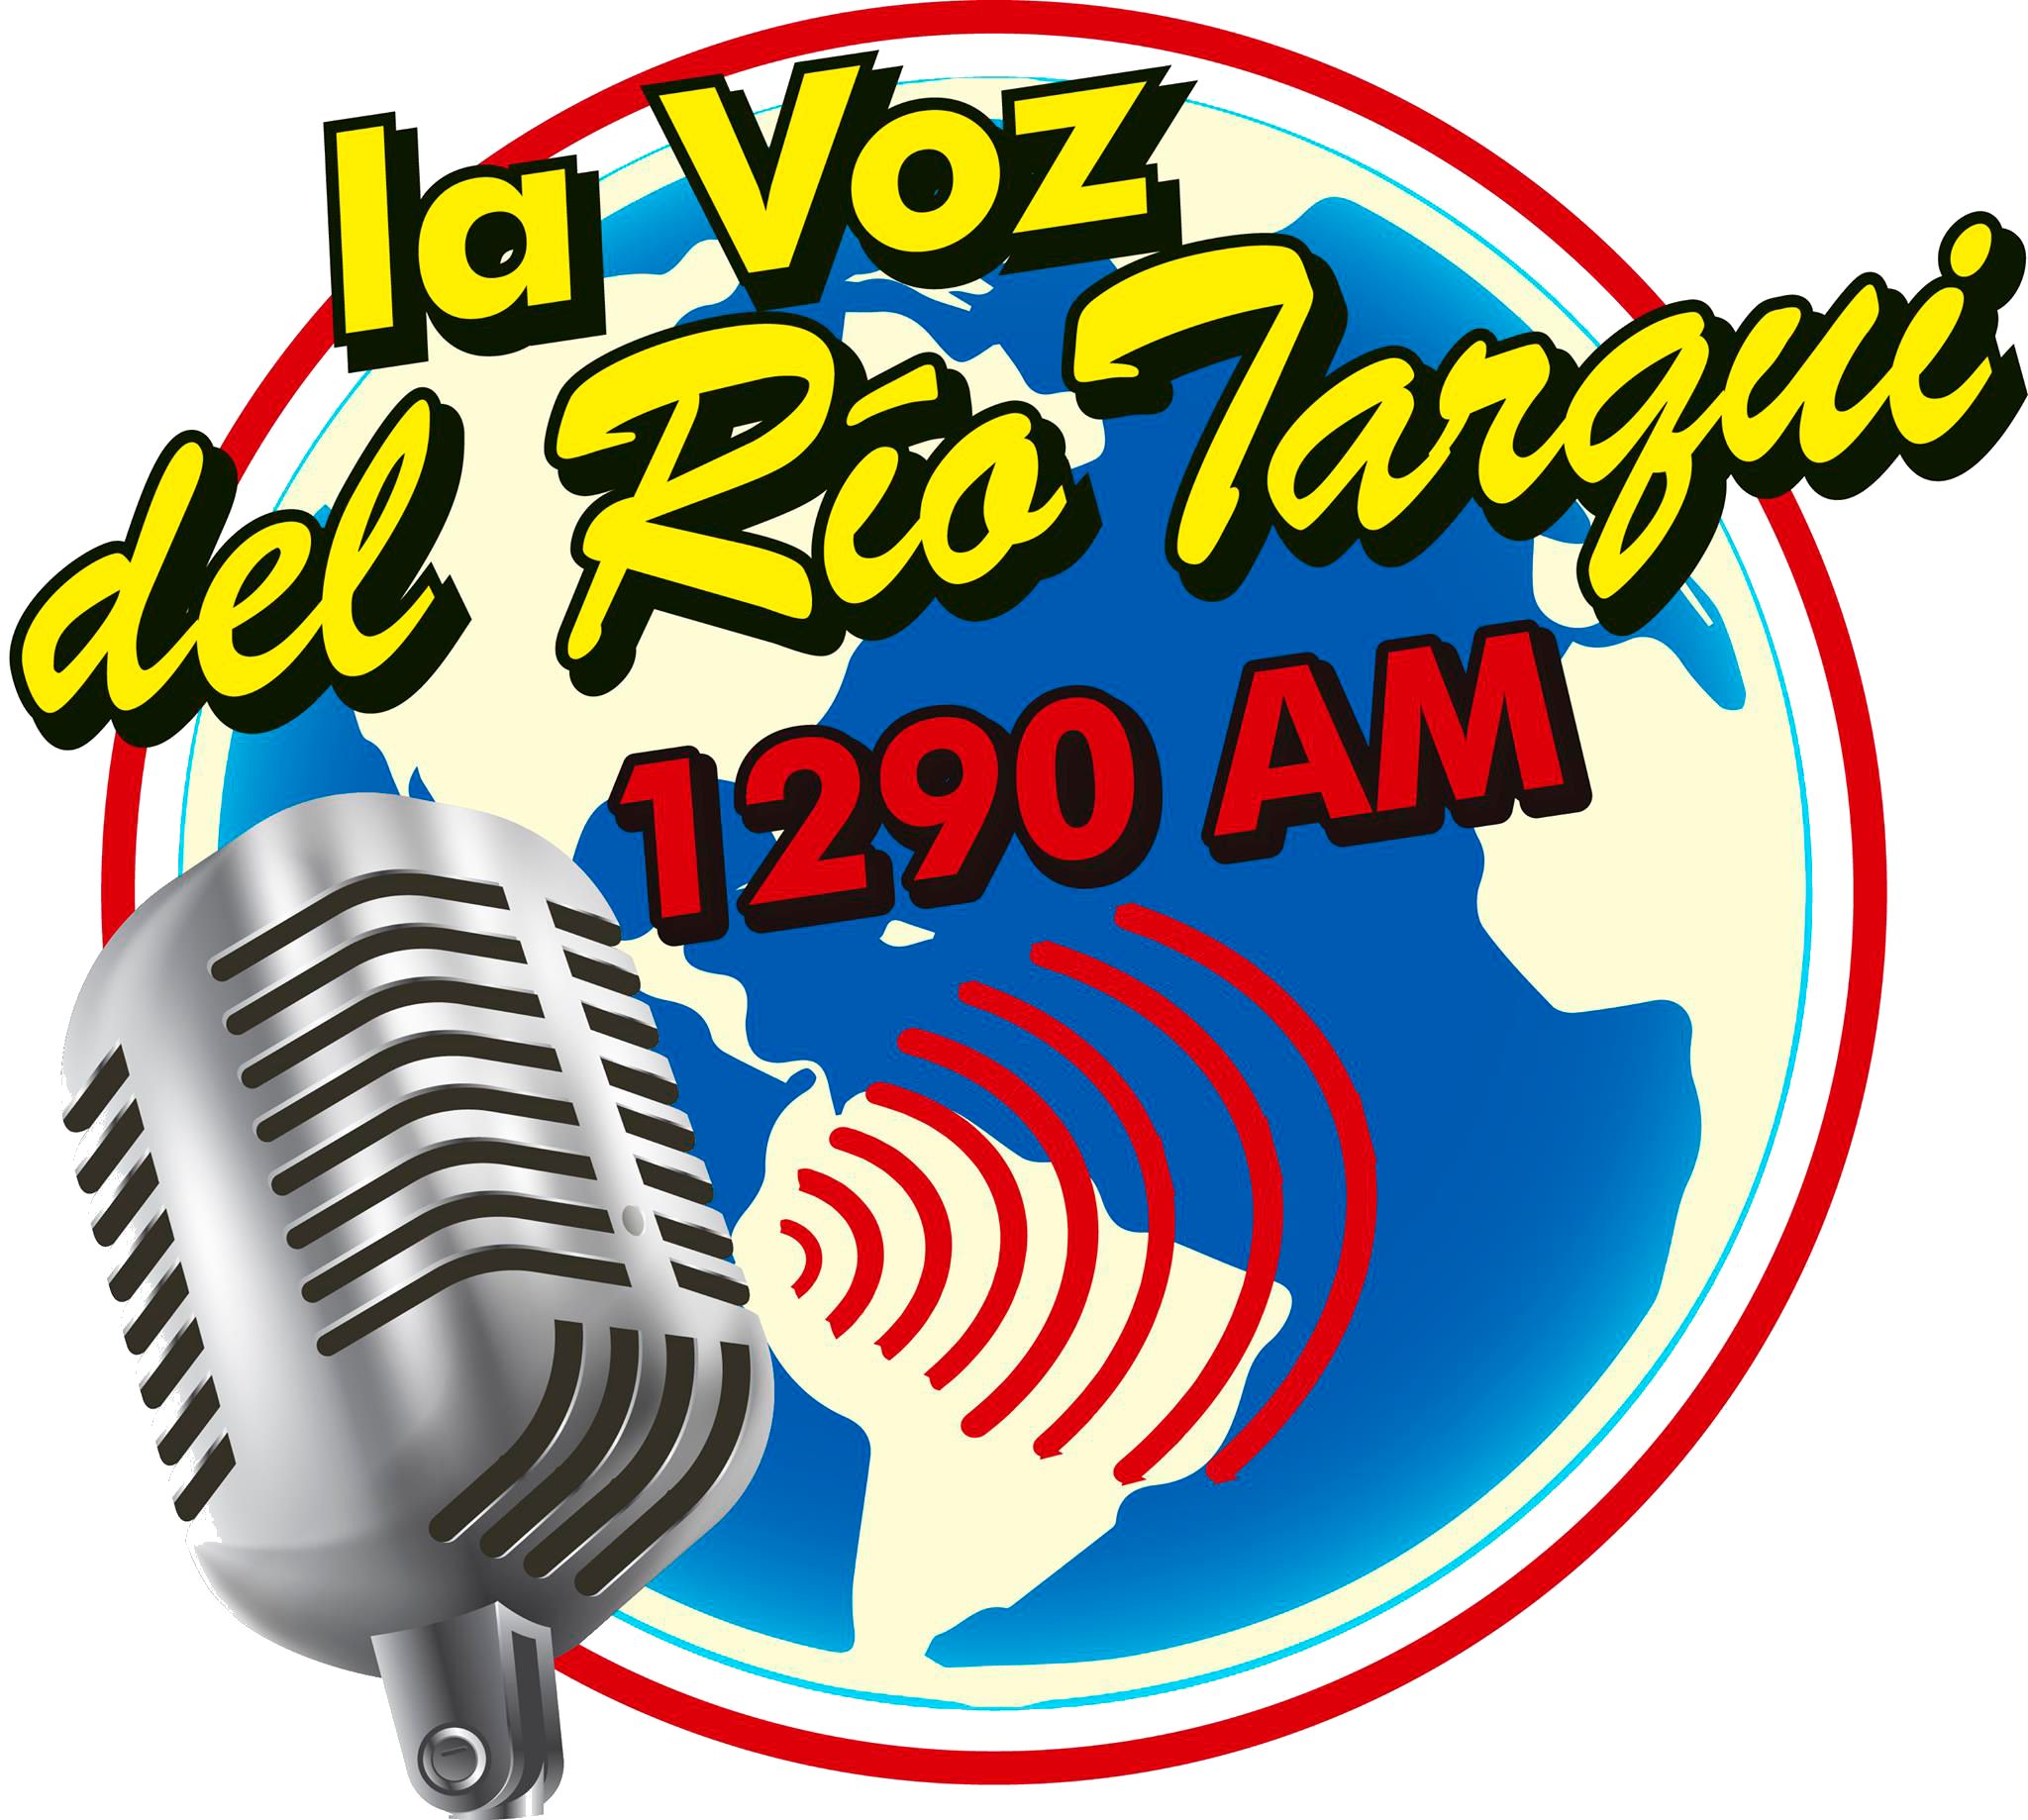 13081_La Voz Del Rio Tarqui.png